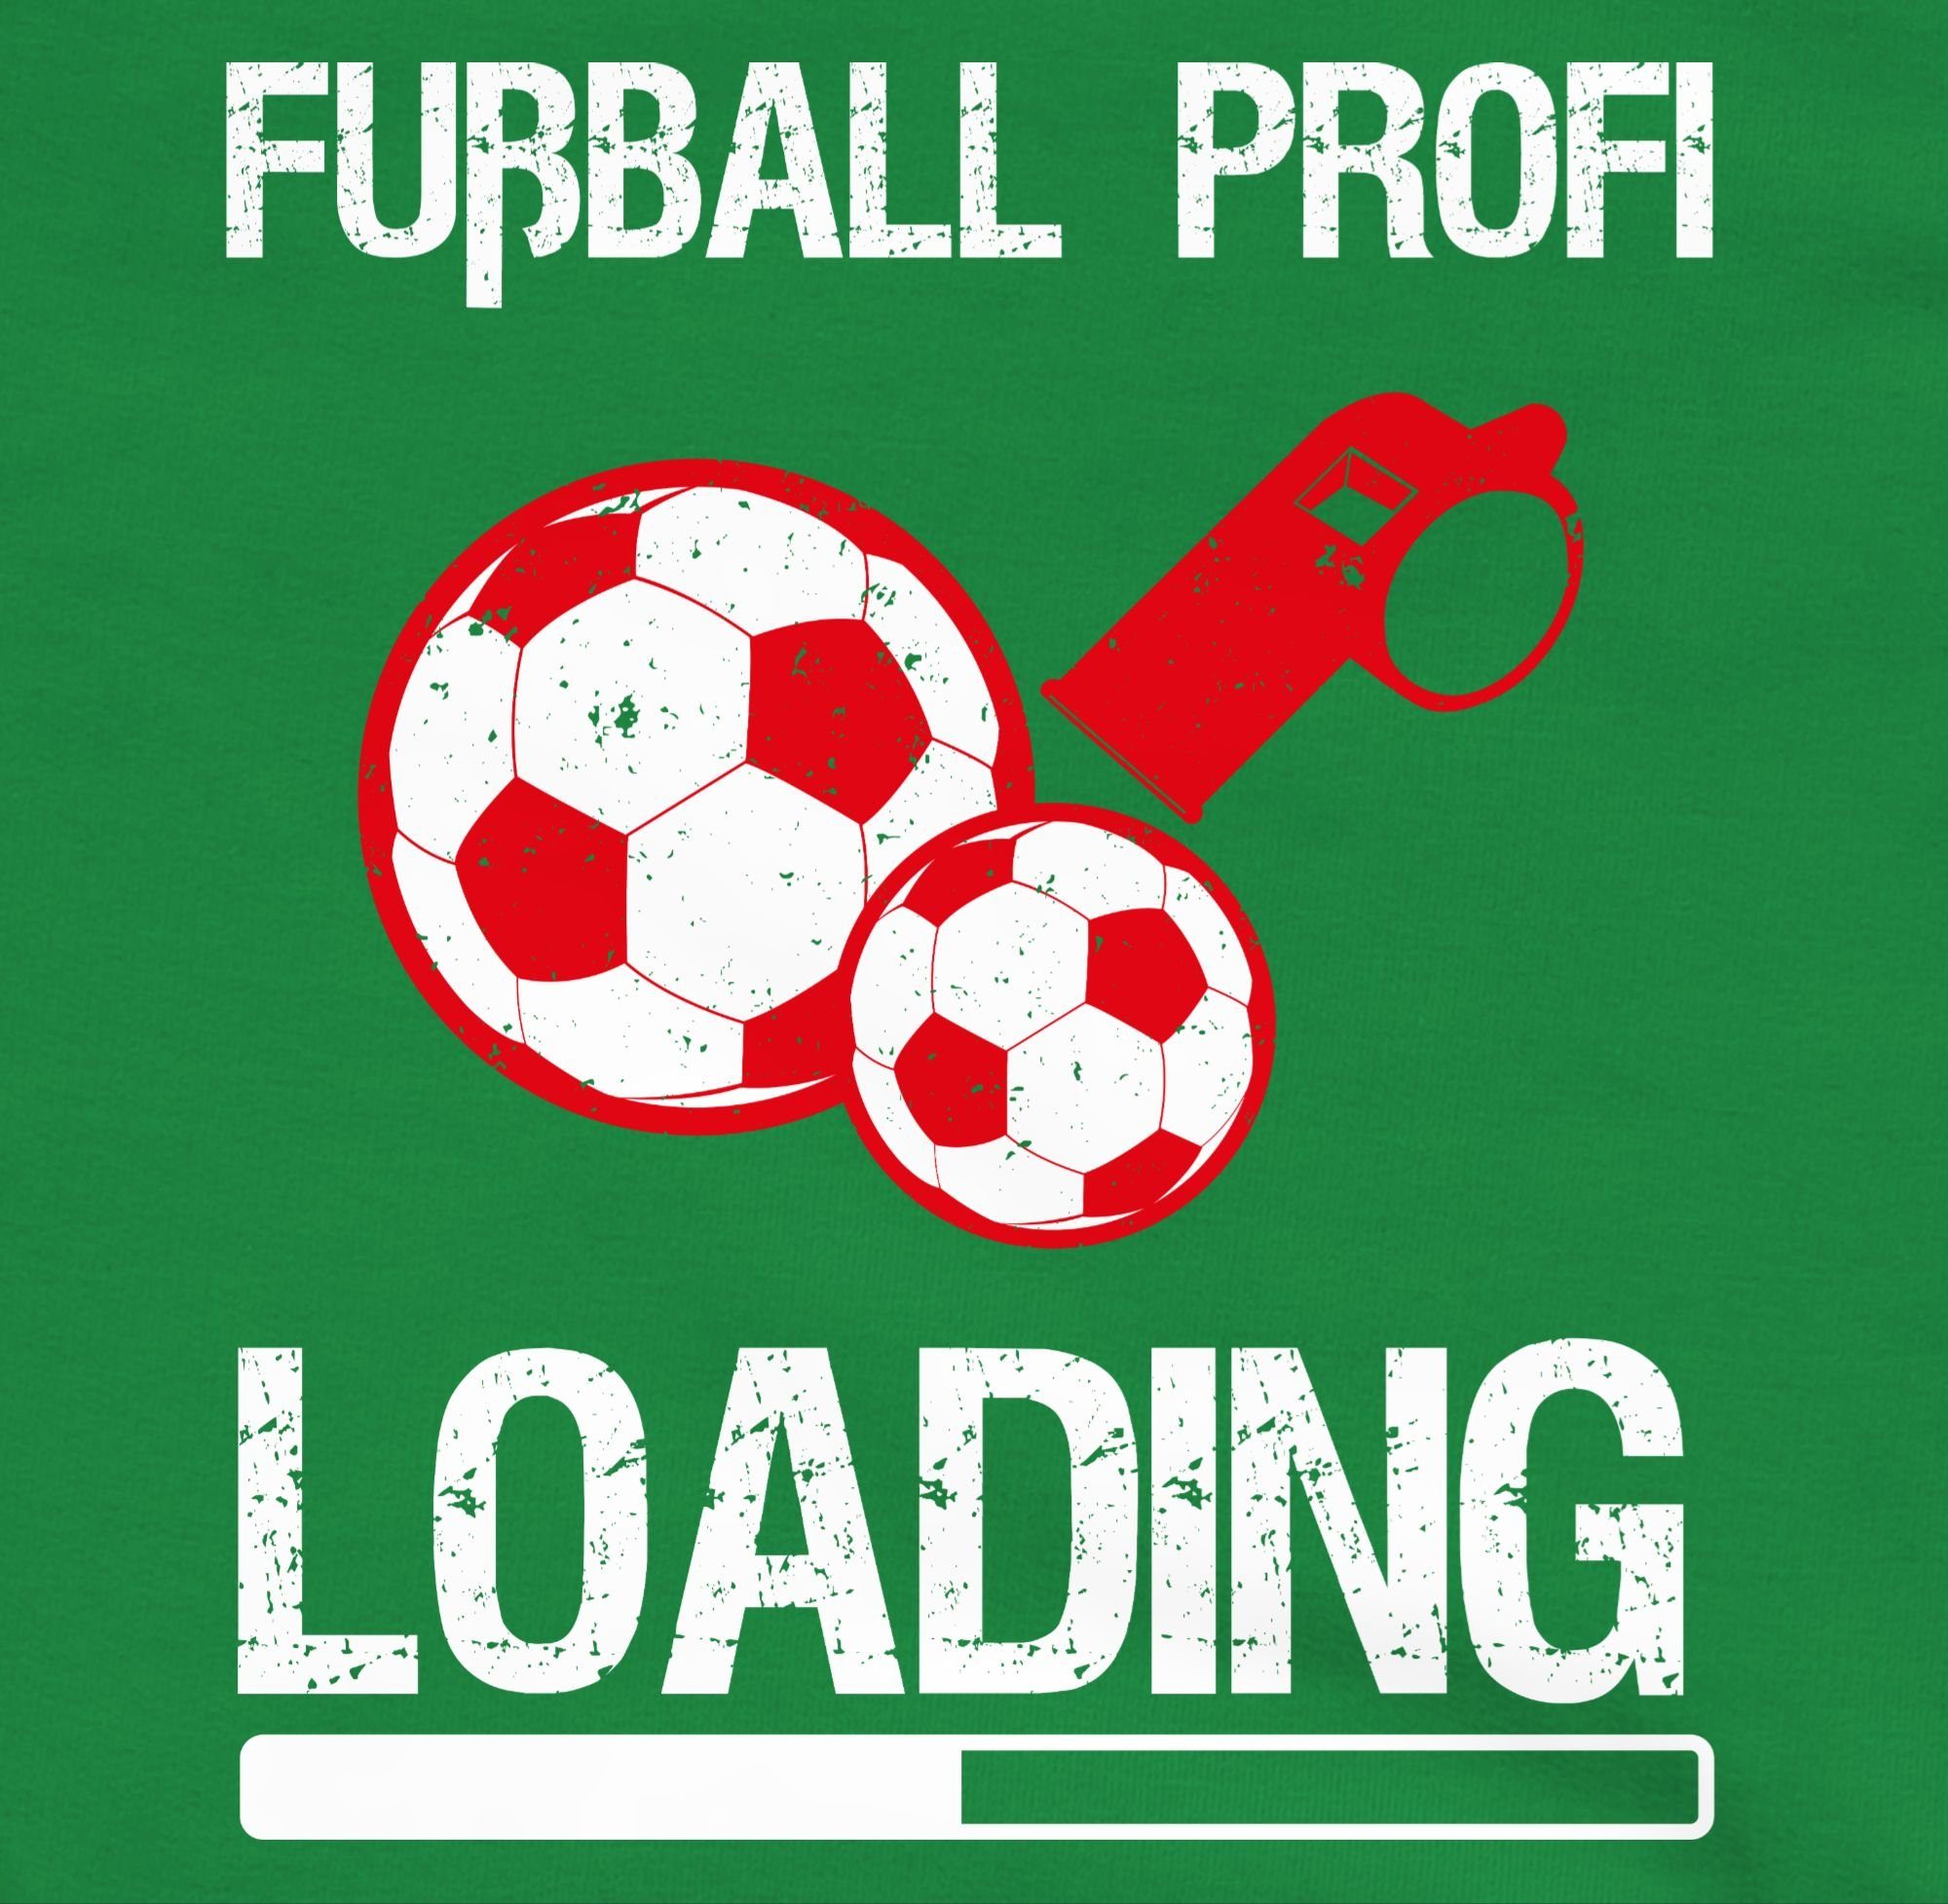 Sport Vintage Fußball Grün Loading 3 Shirtracer Sweatshirt - Kleidung Kinder Profi